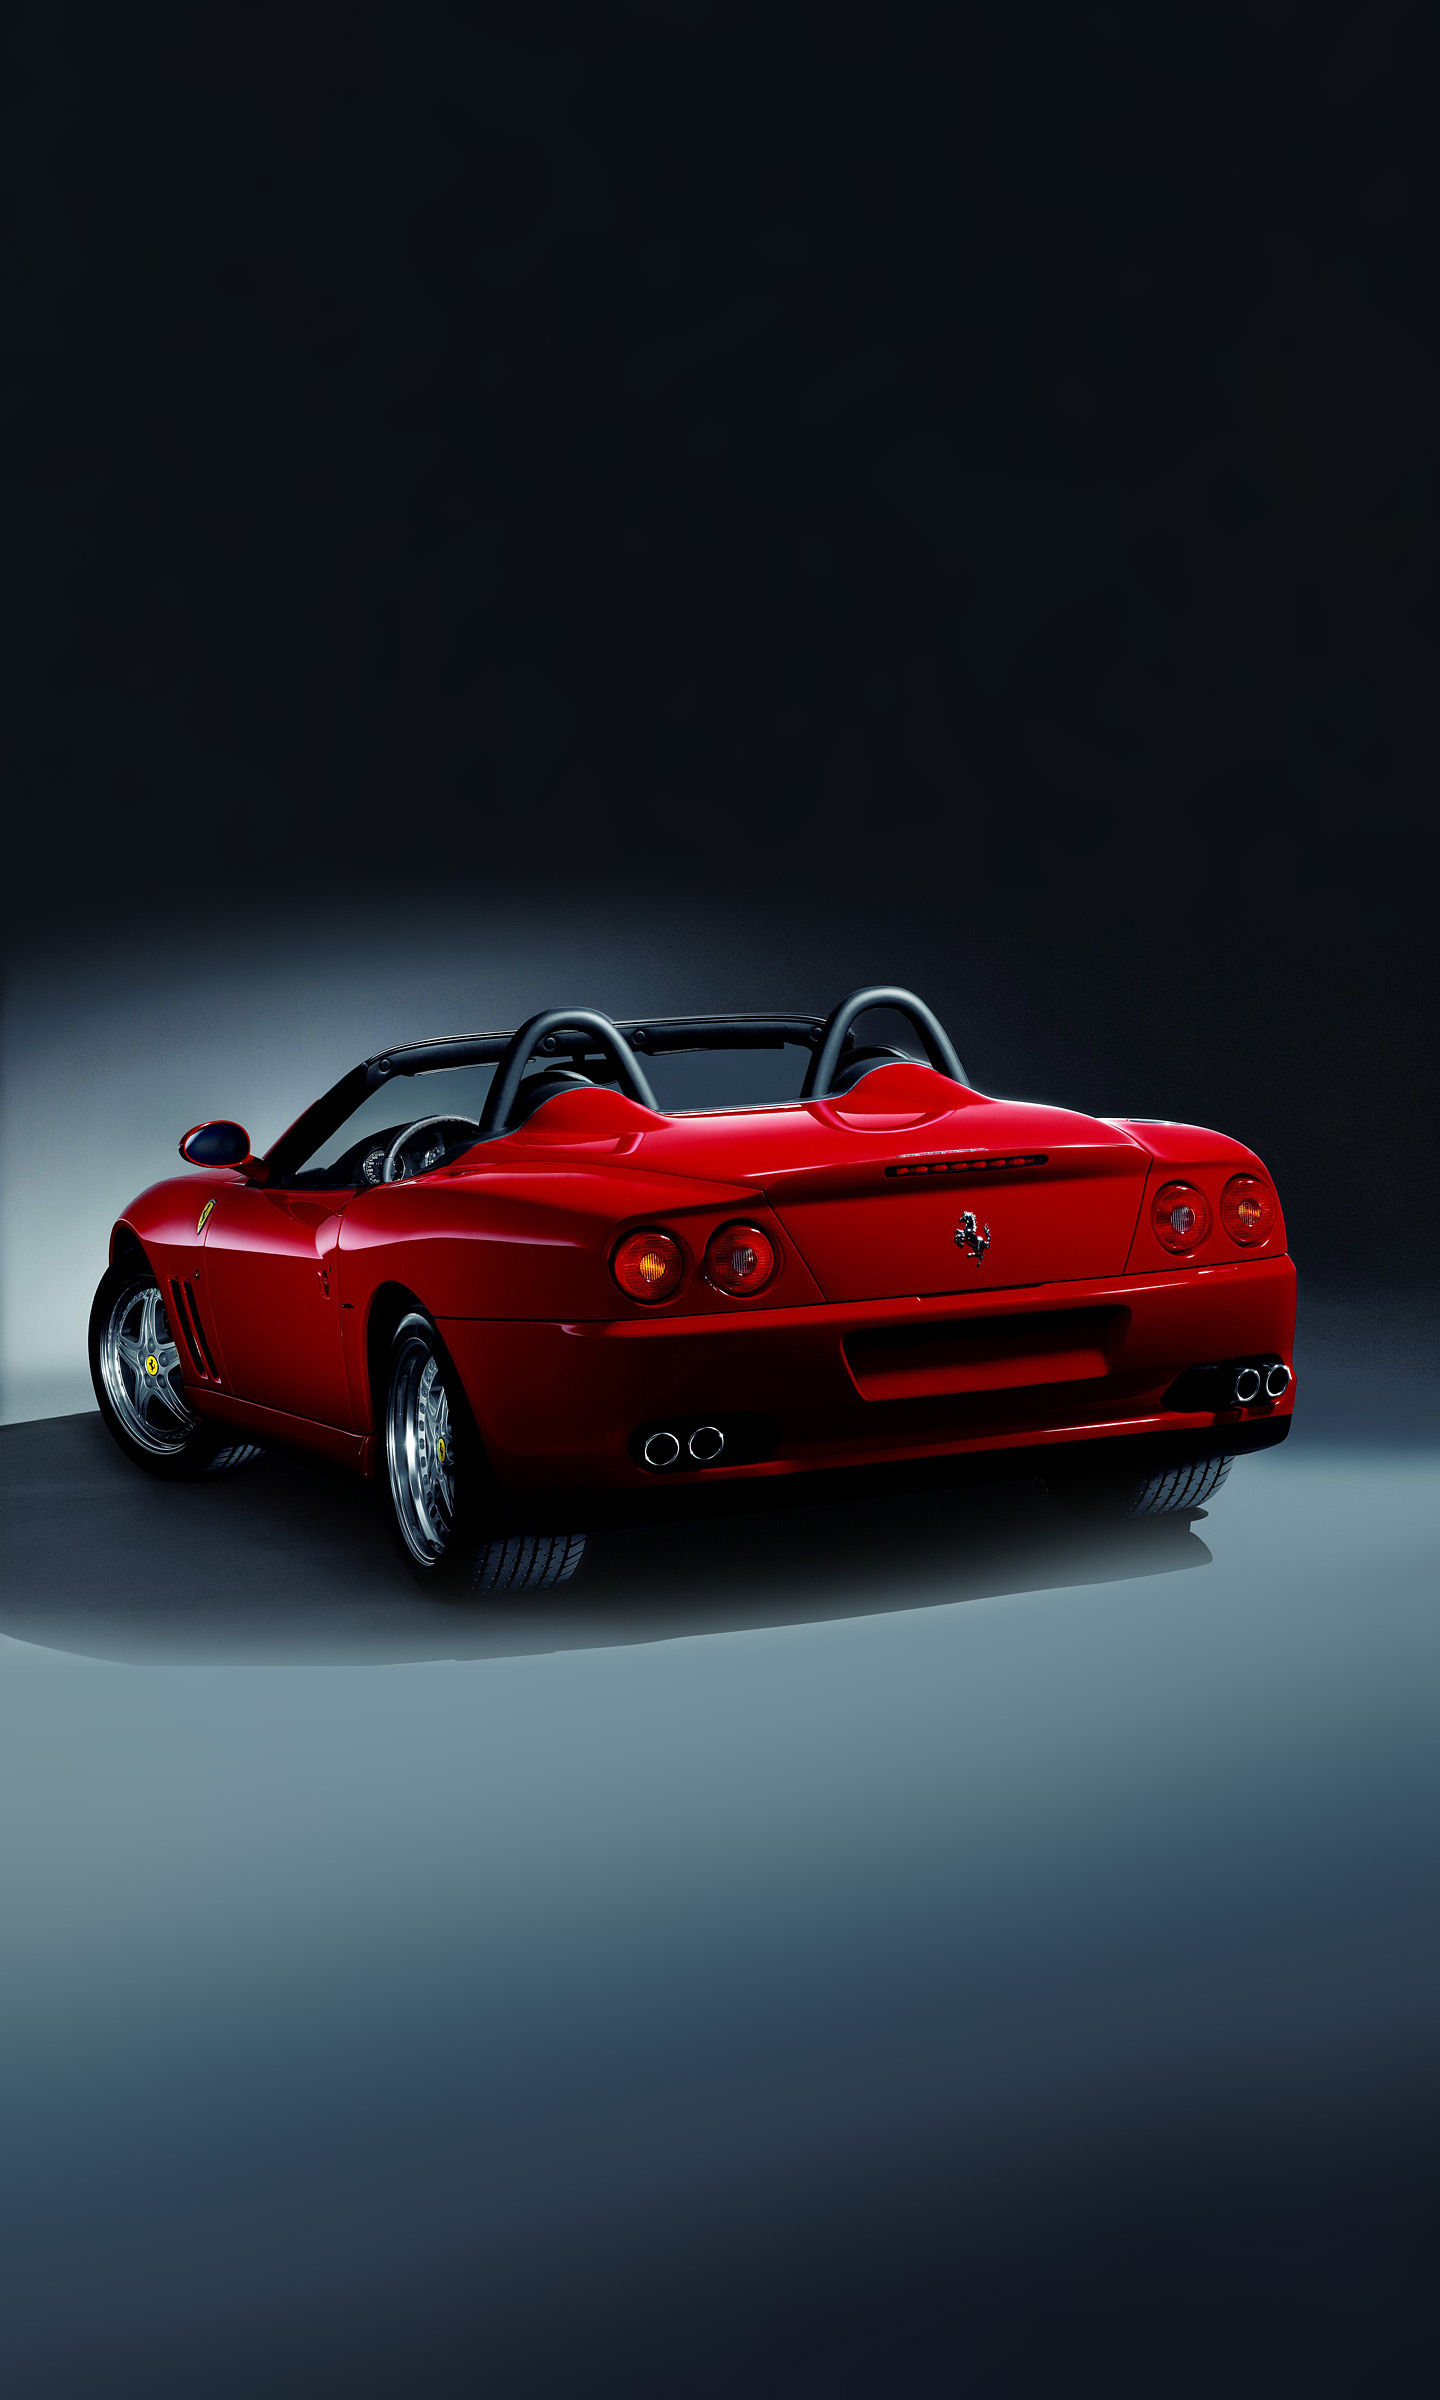  2001 Ferrari 550 Barchetta Wallpaper.